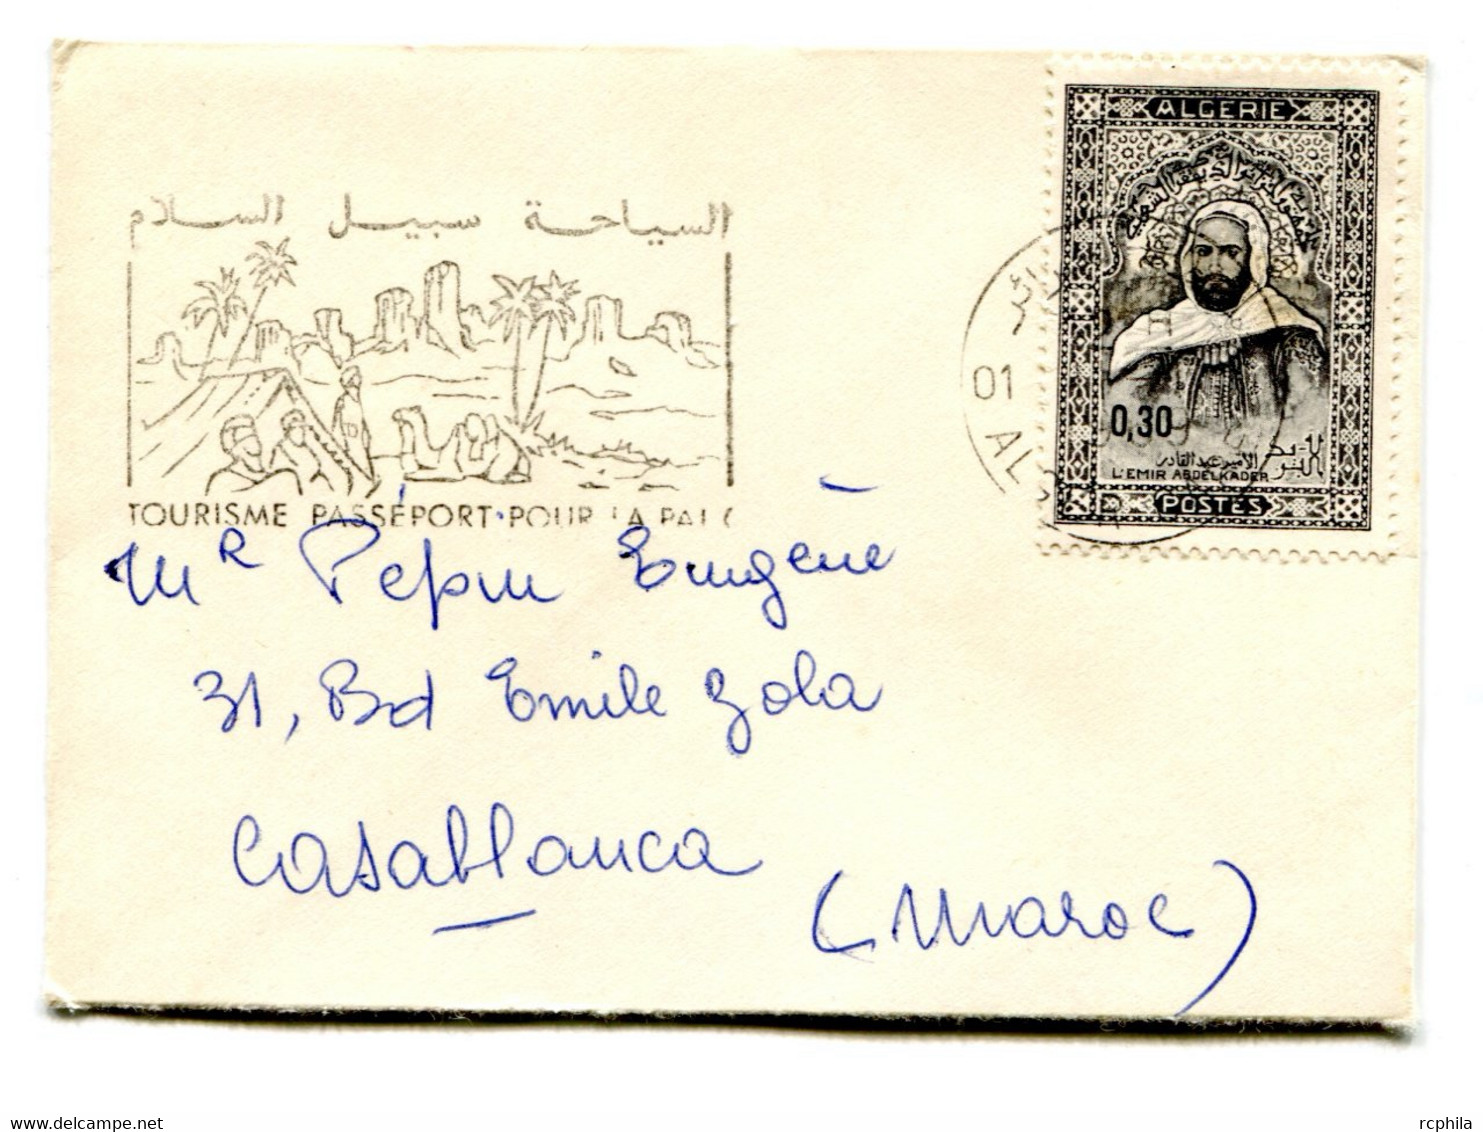 RC 23508 ALGERIE 1969 MIGNONETTE CARTE DE VISITE POUR CASABLANCA MAROC - Algérie (1962-...)